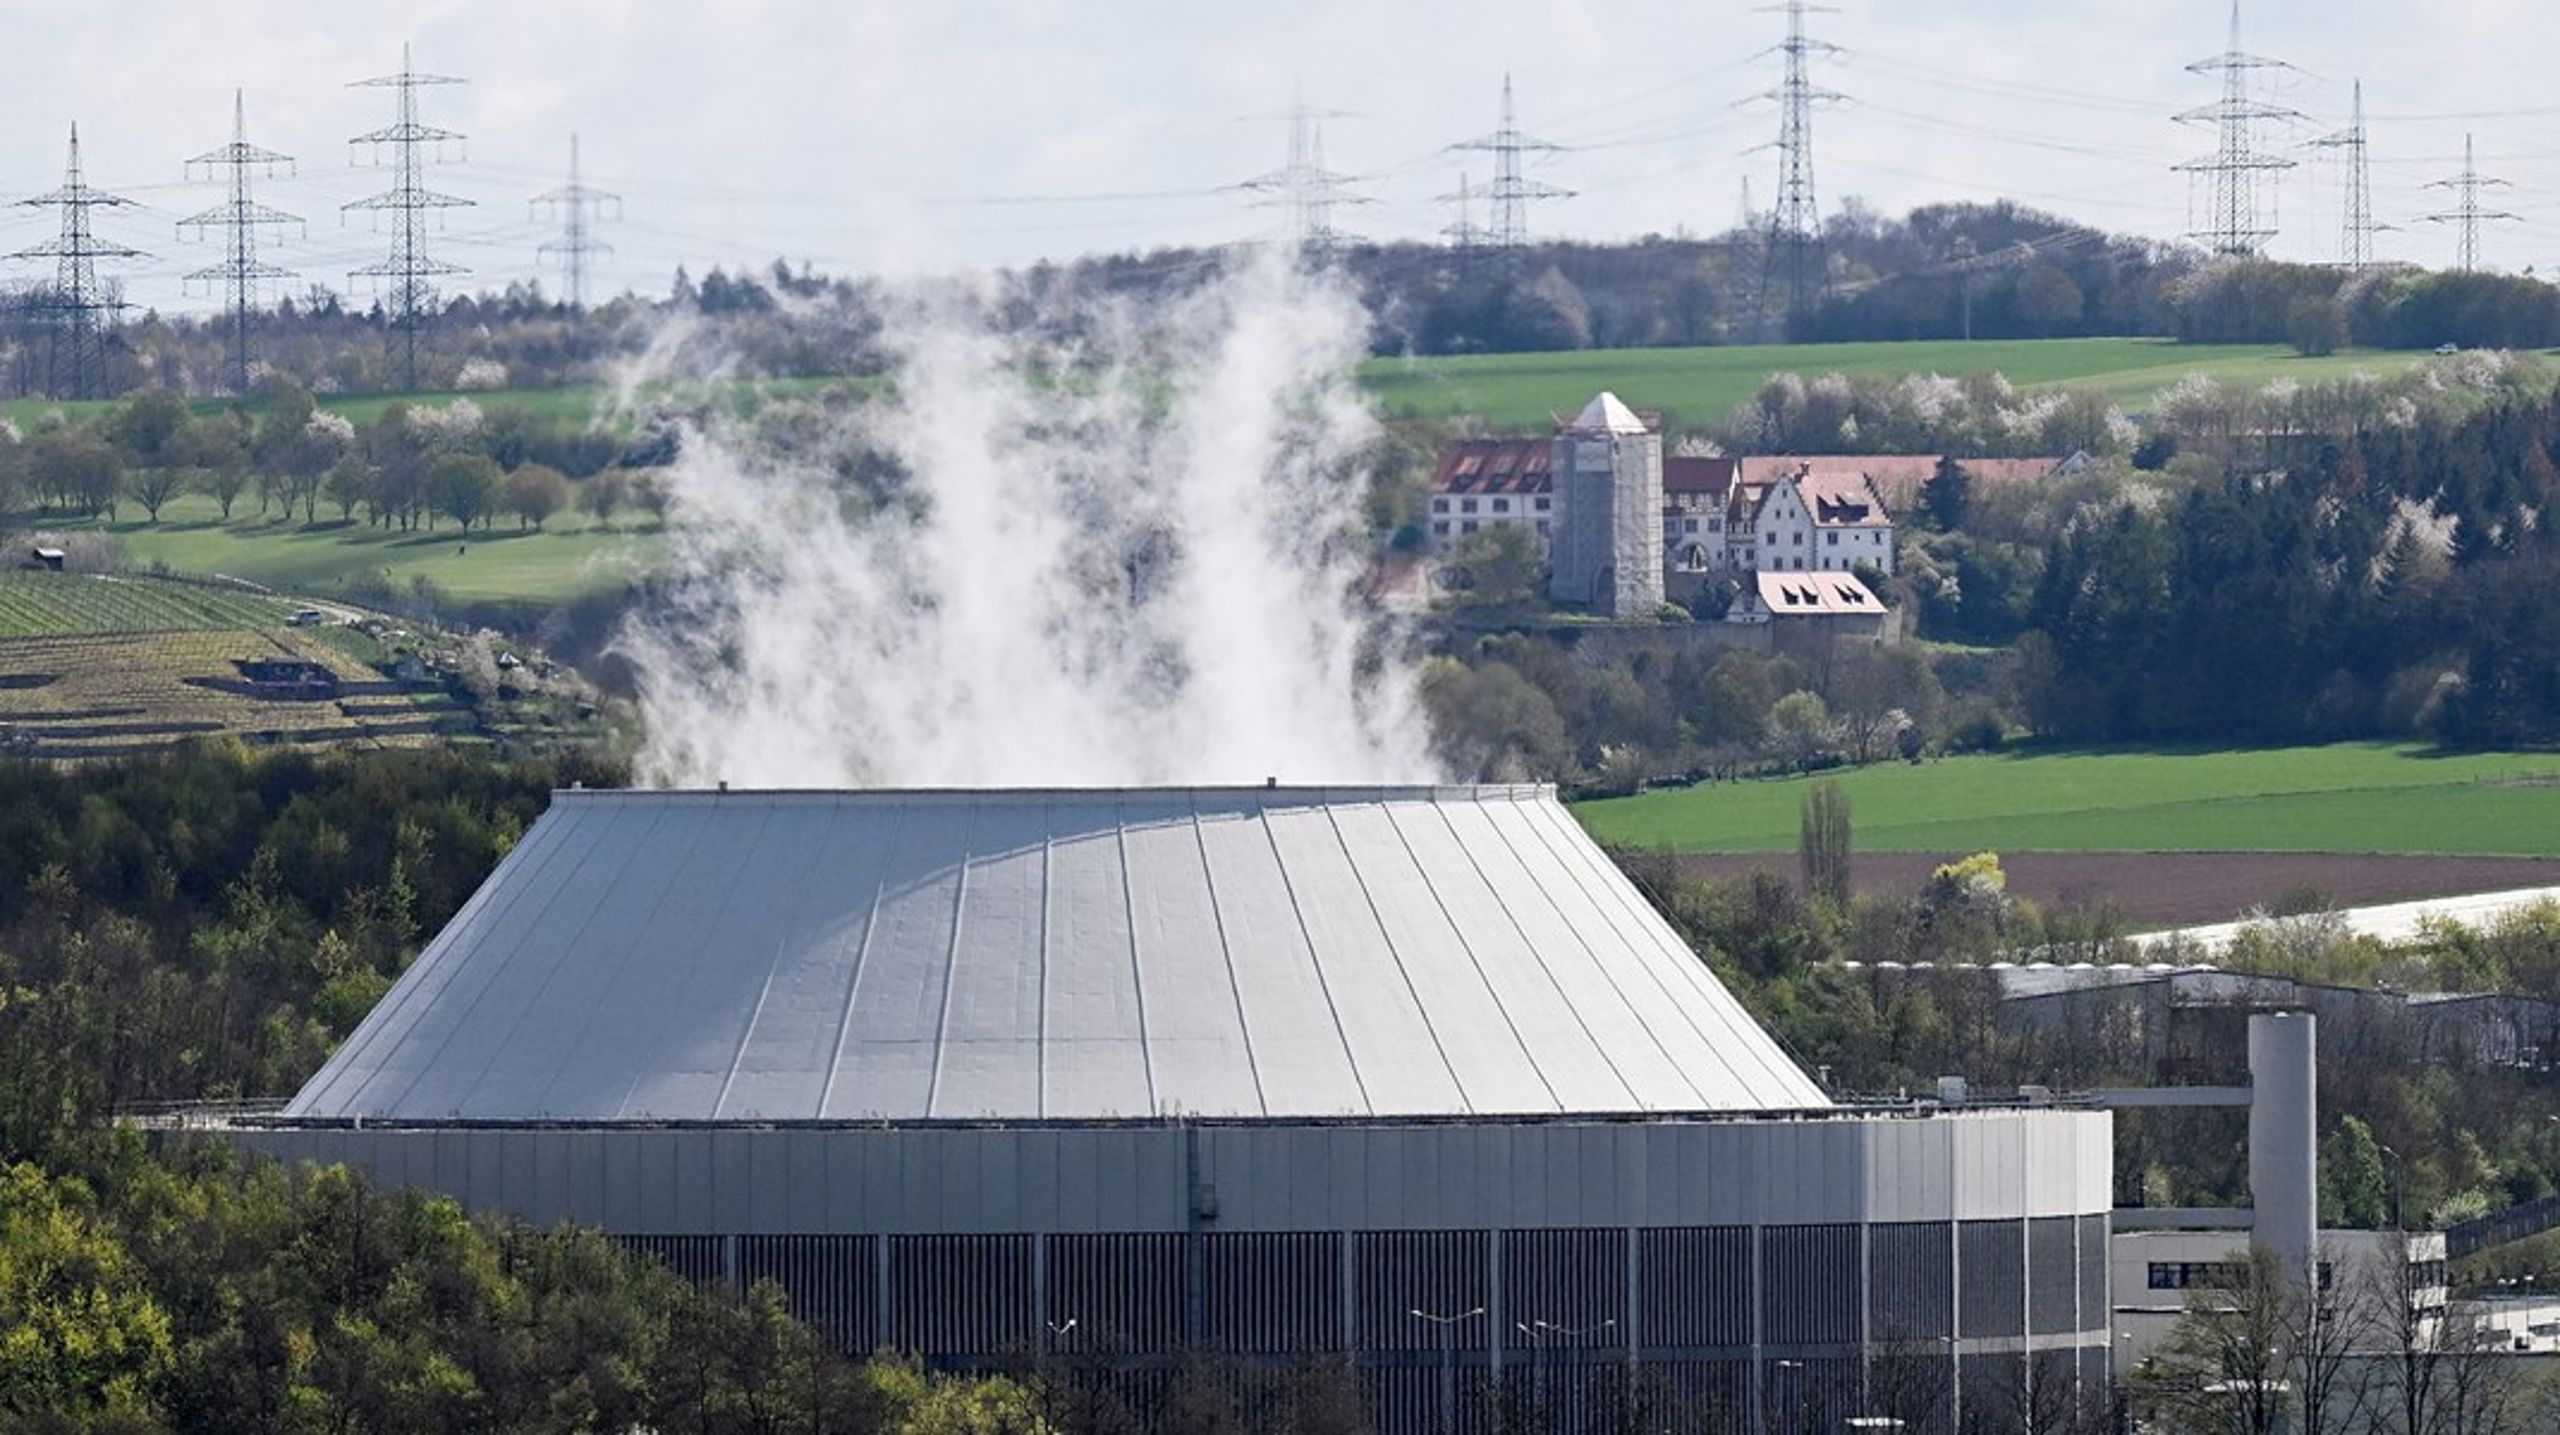 Det danske klimarådet anbefaler ikke å satse på kjernekraft i Danmark. Her er Tysklands siste kjernekraftverk avbildet. Kjernekraftverket&nbsp;Neckarwestheim ble stengt ned 15. april.